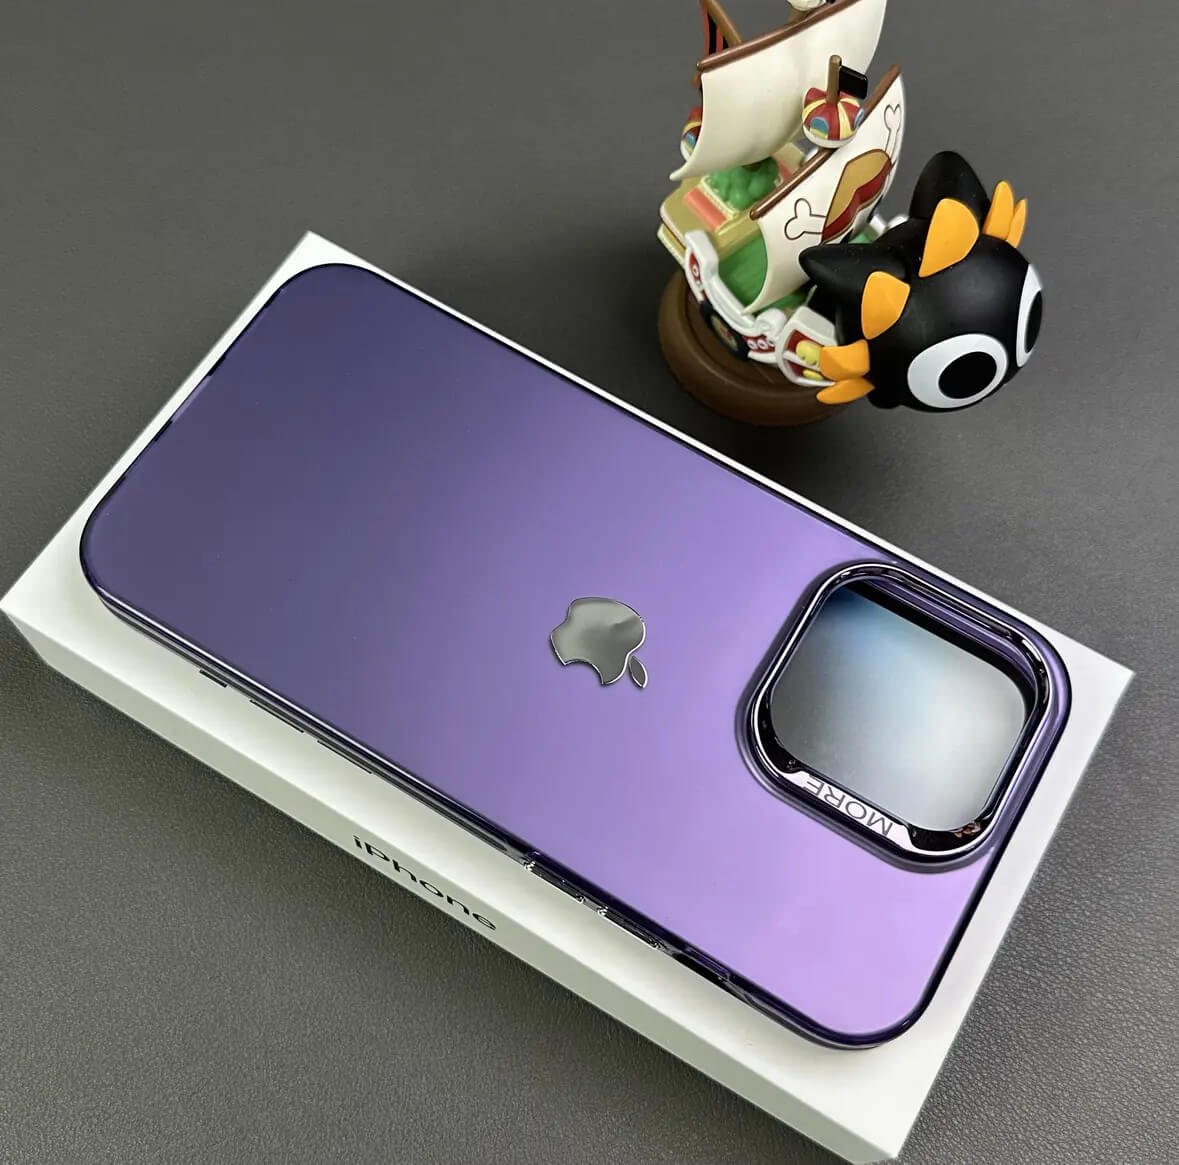 Monochrome simple metal button drop-resistant phone case Apple_Shopier